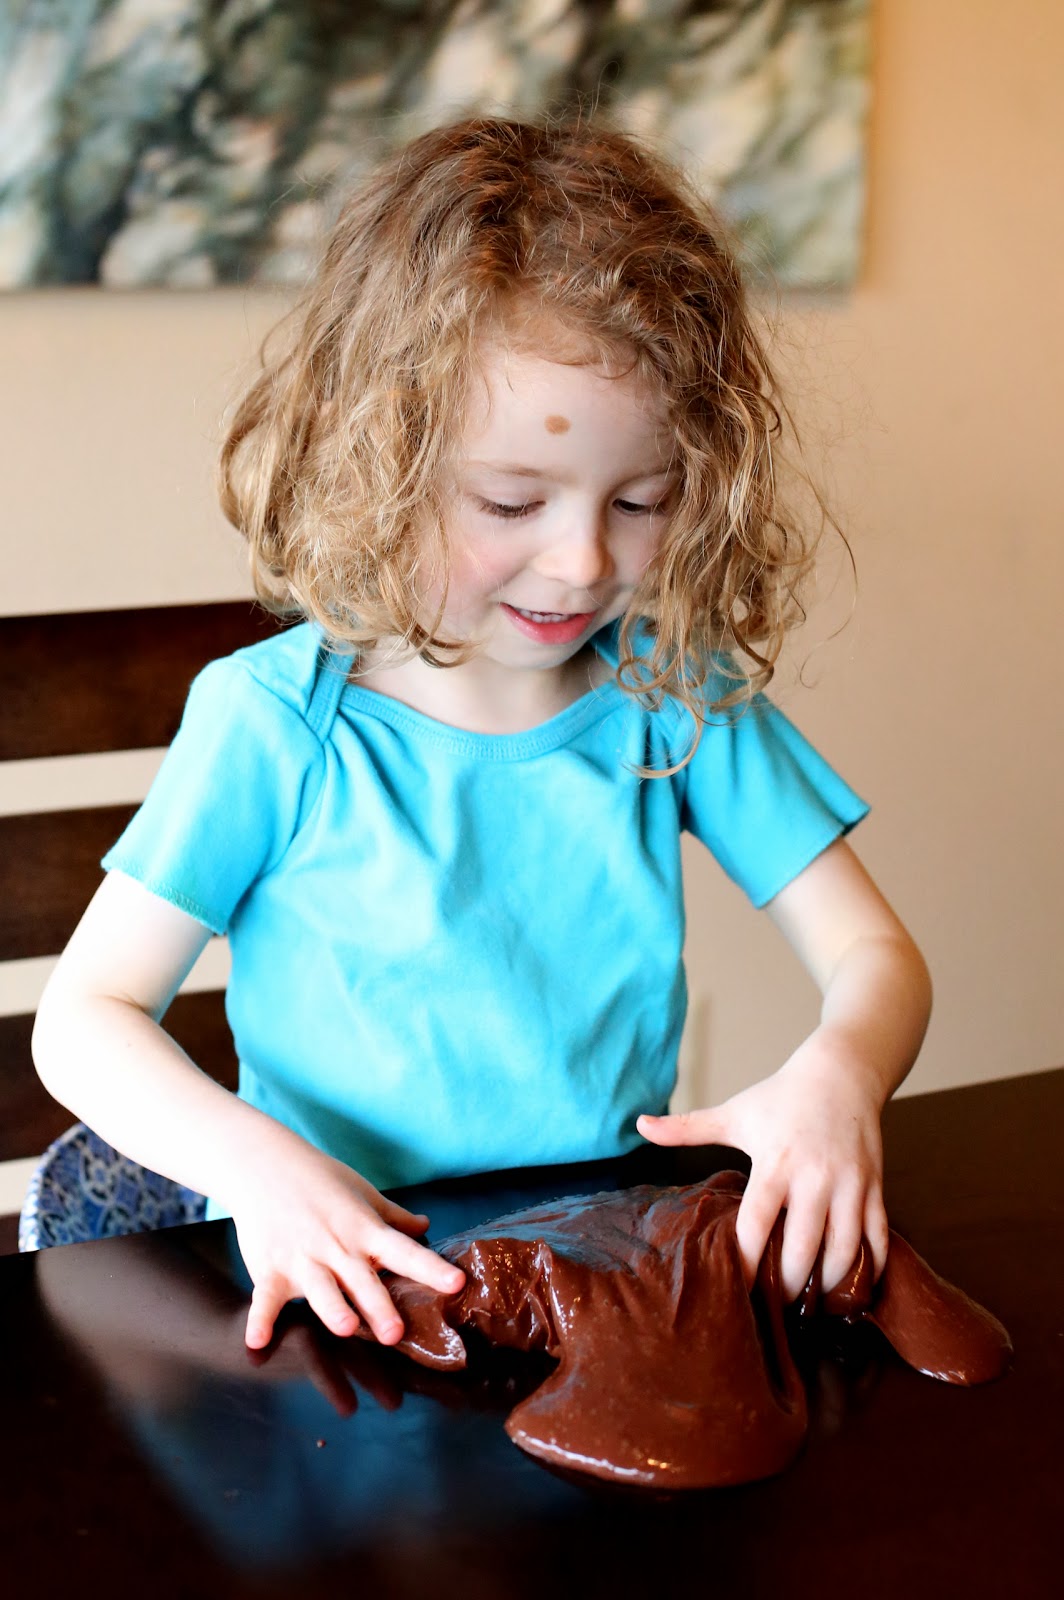 Лизун с шоколадным ароматом-игры ребенка на столе